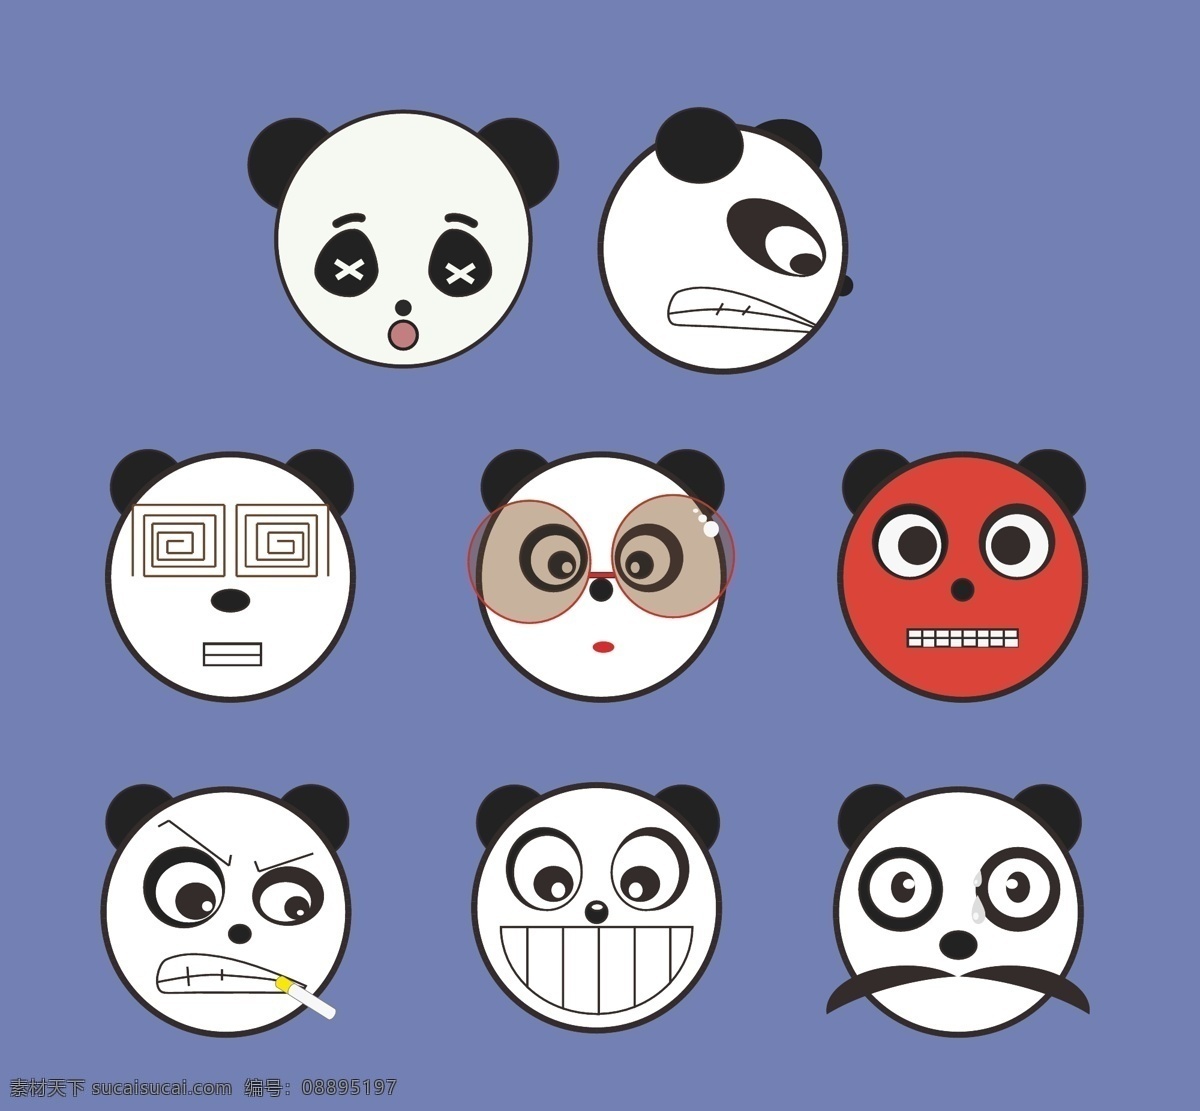 卡通 熊猫 矢量 表情 包 元素 装饰 图案 集合 矢量熊猫 卡通熊猫 熊猫元素 熊猫装饰 熊猫图案 可爱熊猫 扁平化 彩色 表情包 描边